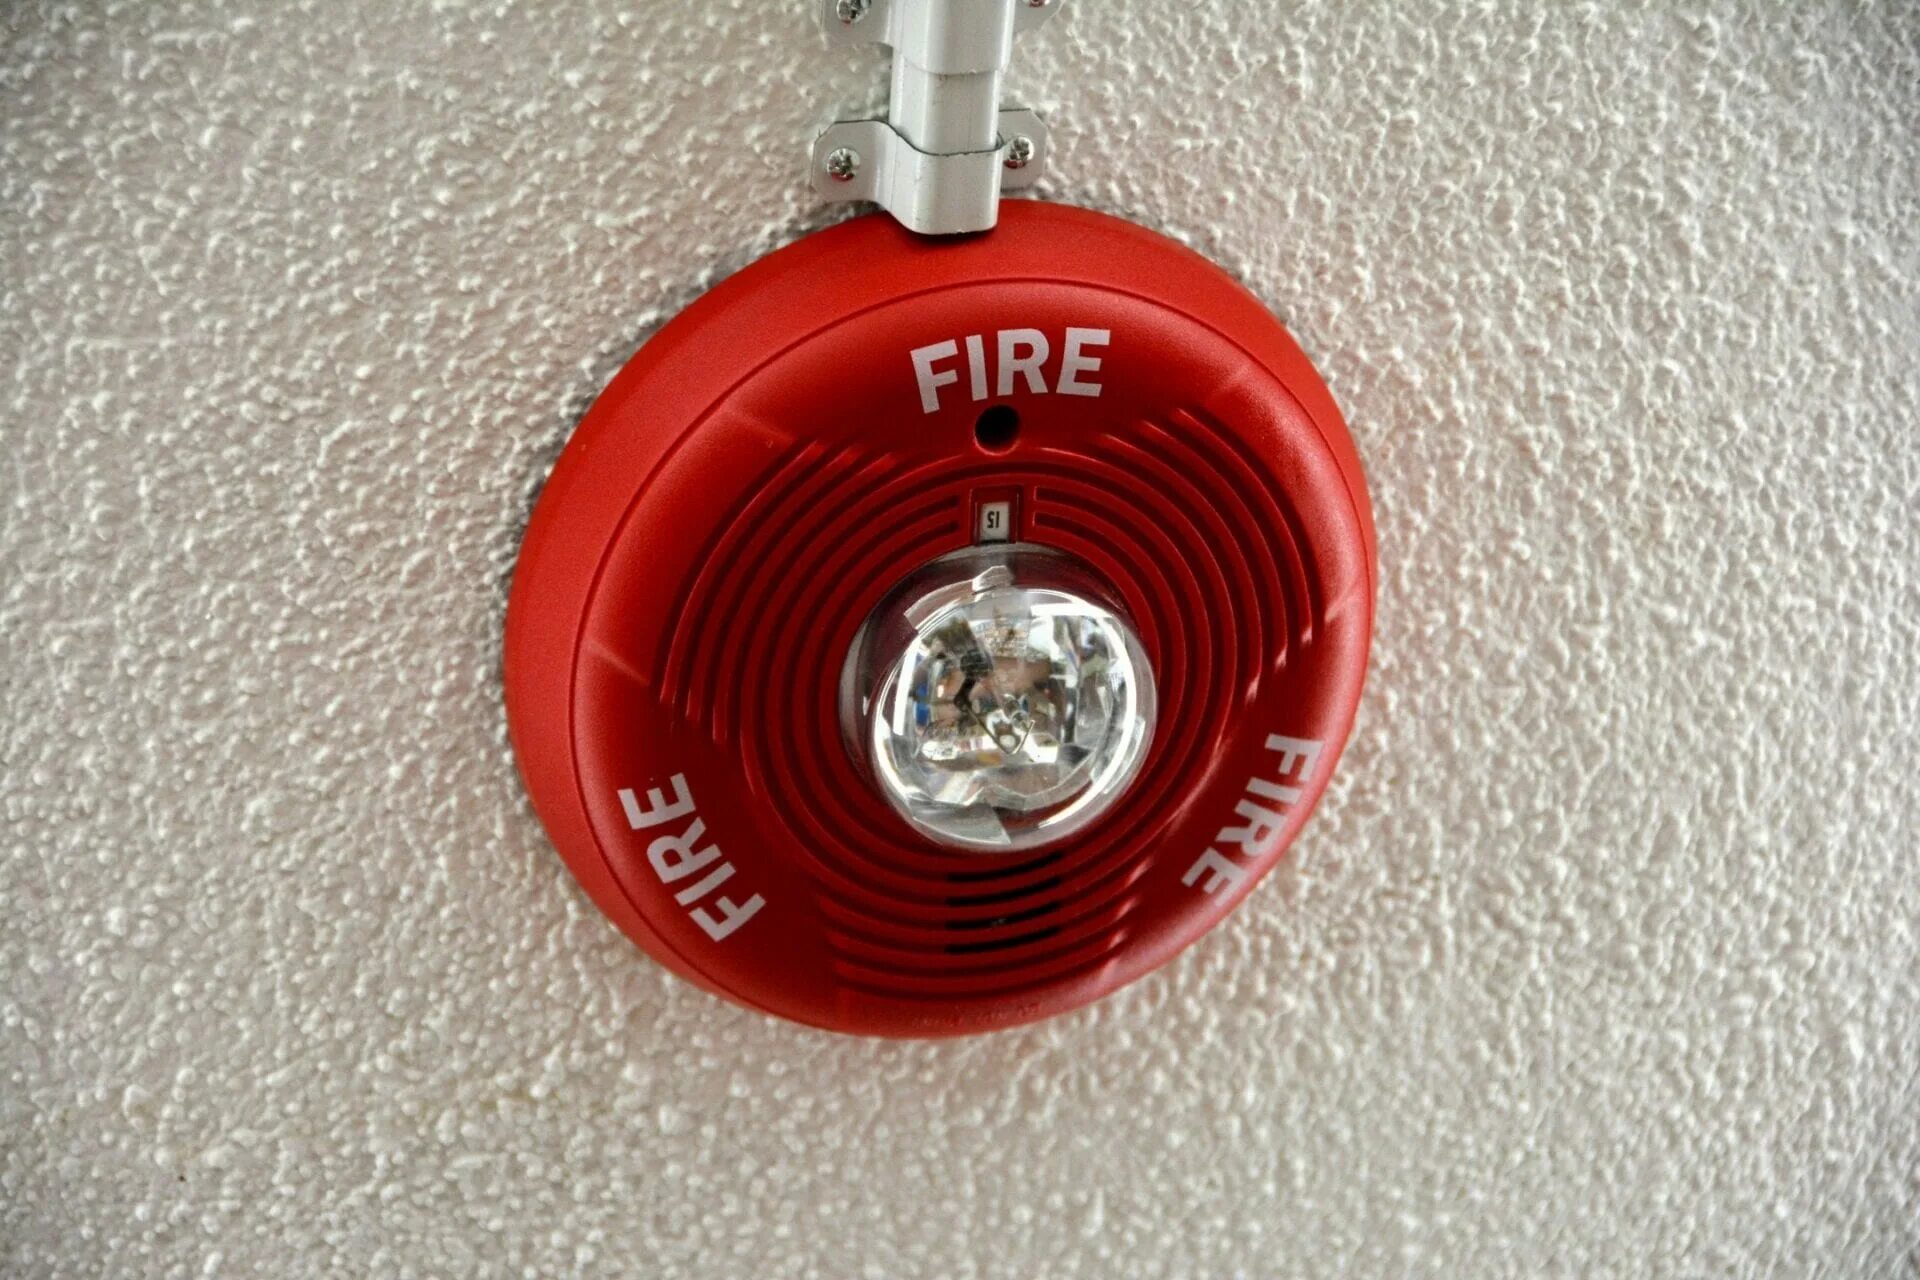 Пожарная сигнализация сработала дома. Пожарная сигнализация Аларм. Пожарная сигнализация в доме. Динамик пожарной сигнализации. Микрофон пожарной сигнализации.